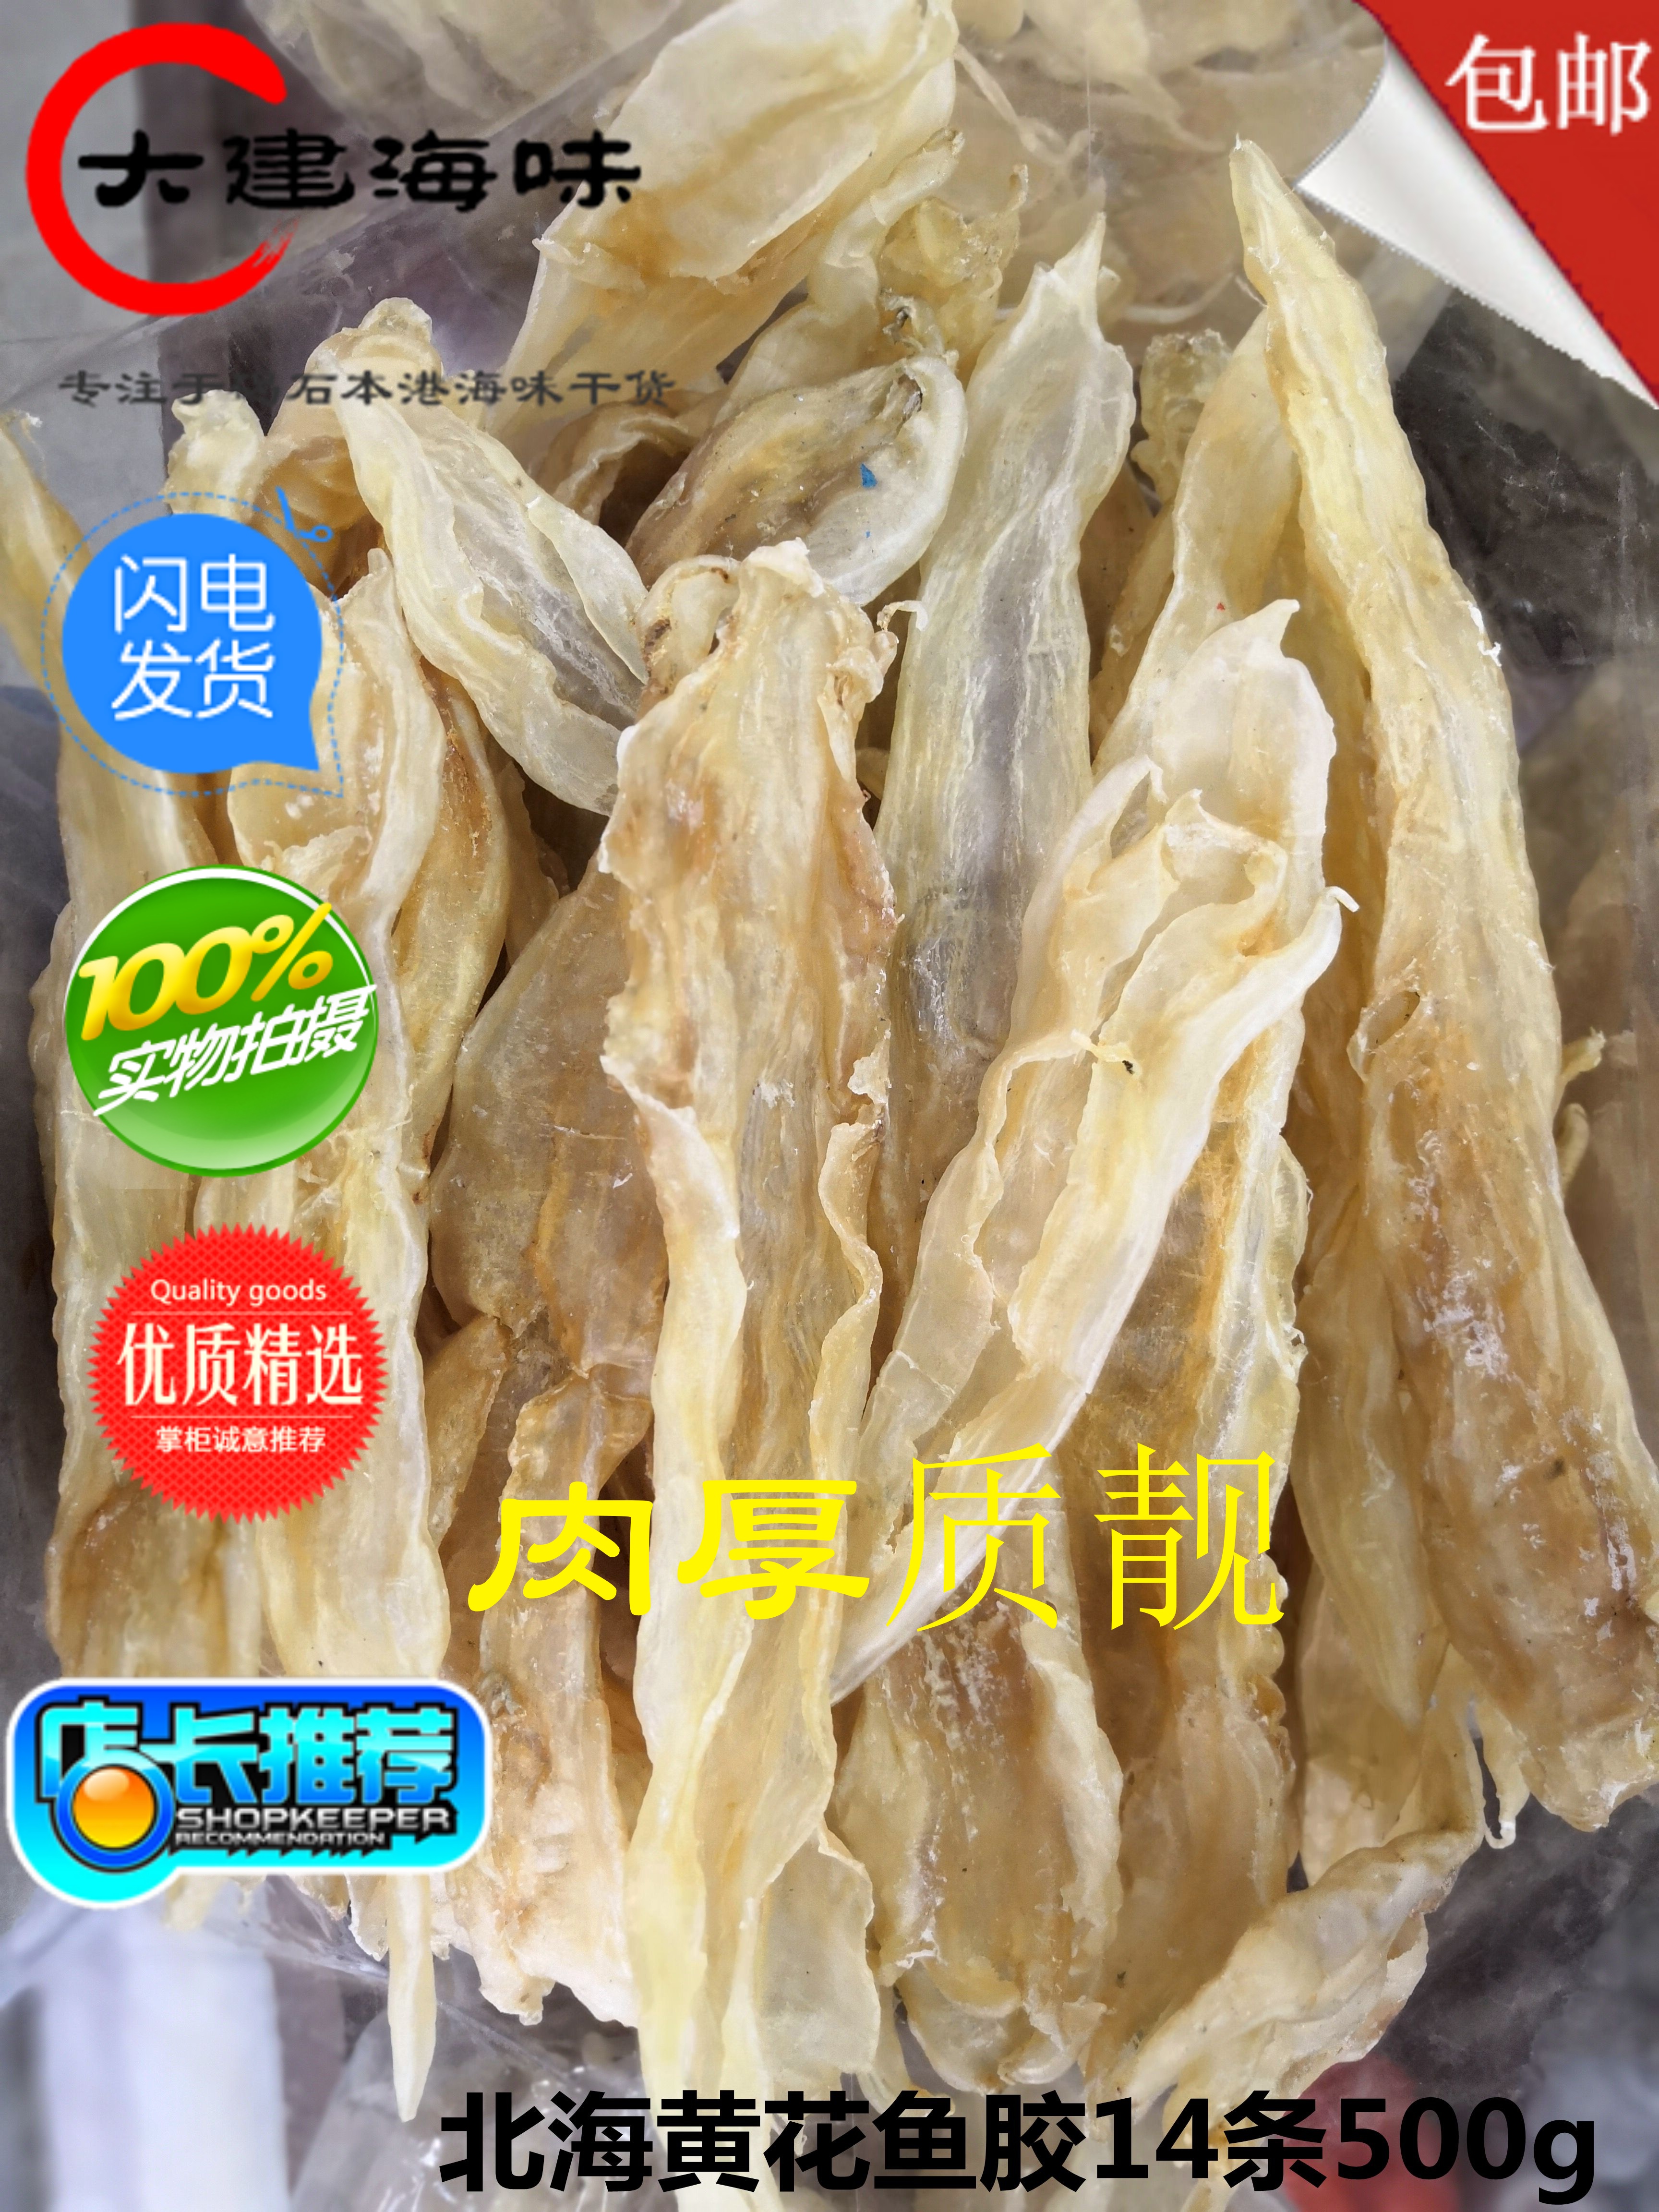 广东潮汕尾碣石特产北海黄花胶鱼胶干货正品250g7条海鲜鳘鱼花胶